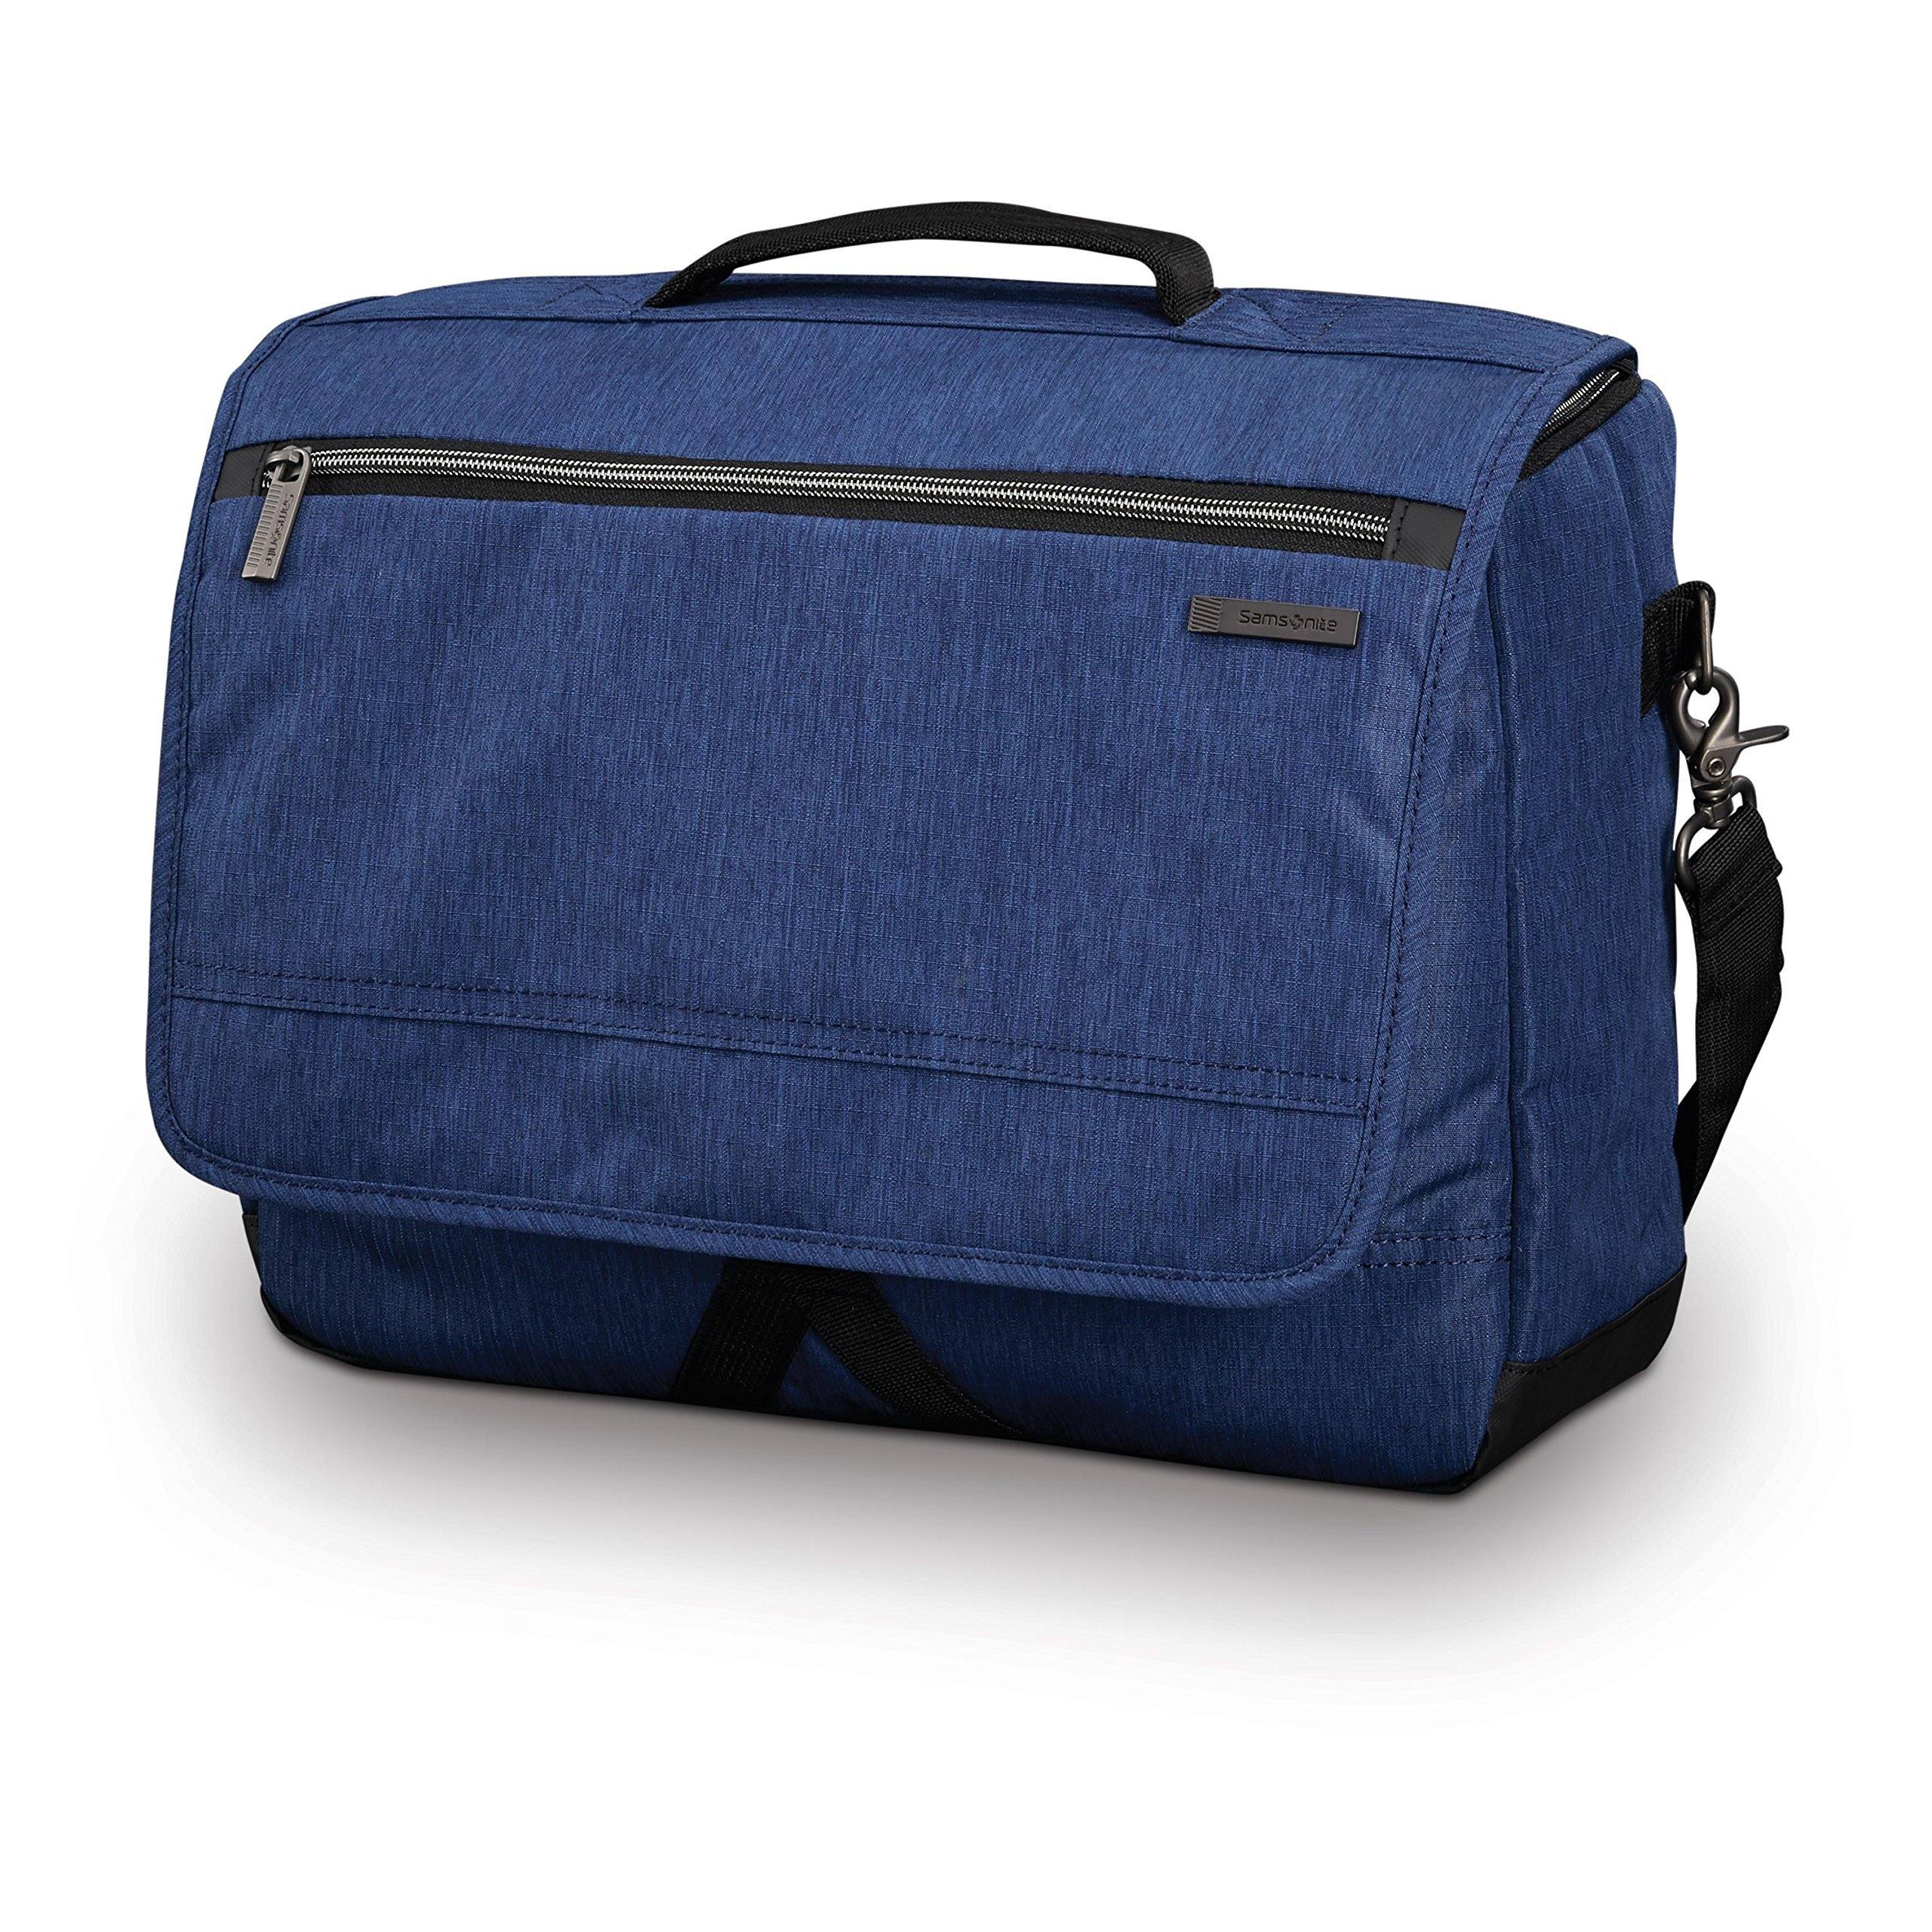 Samsonite Modern Utility Messenger Bag (Blue Chambray)